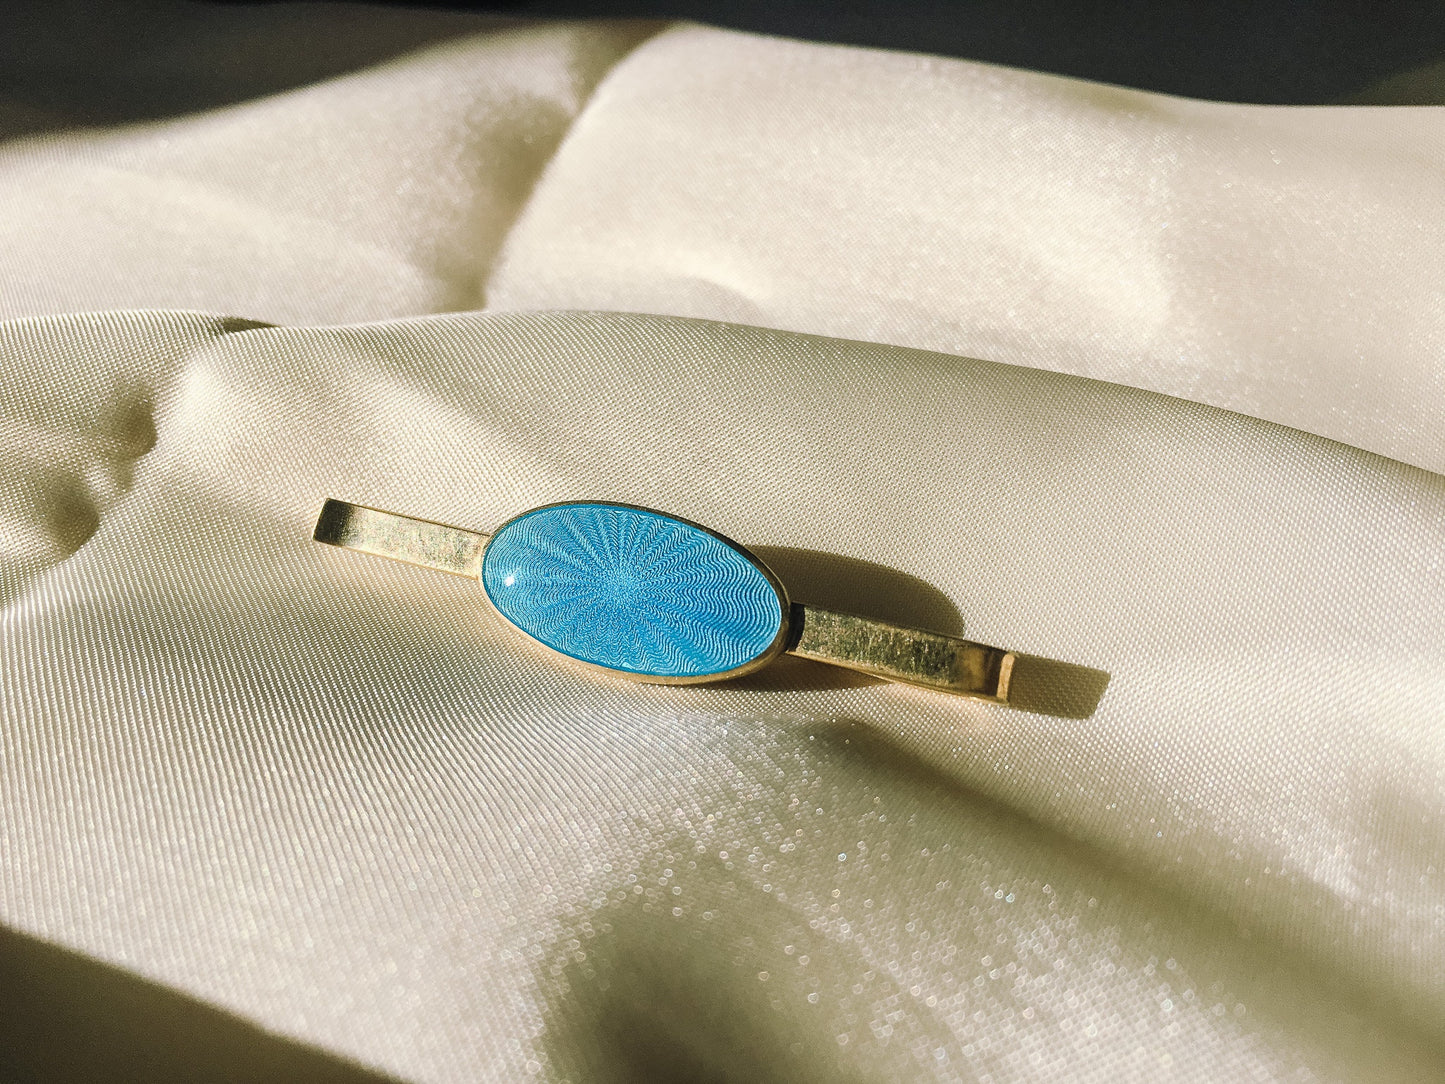 Vintage Vibrant Blue Guilloche Enamel Tie Clip, Marked D.A. 830S